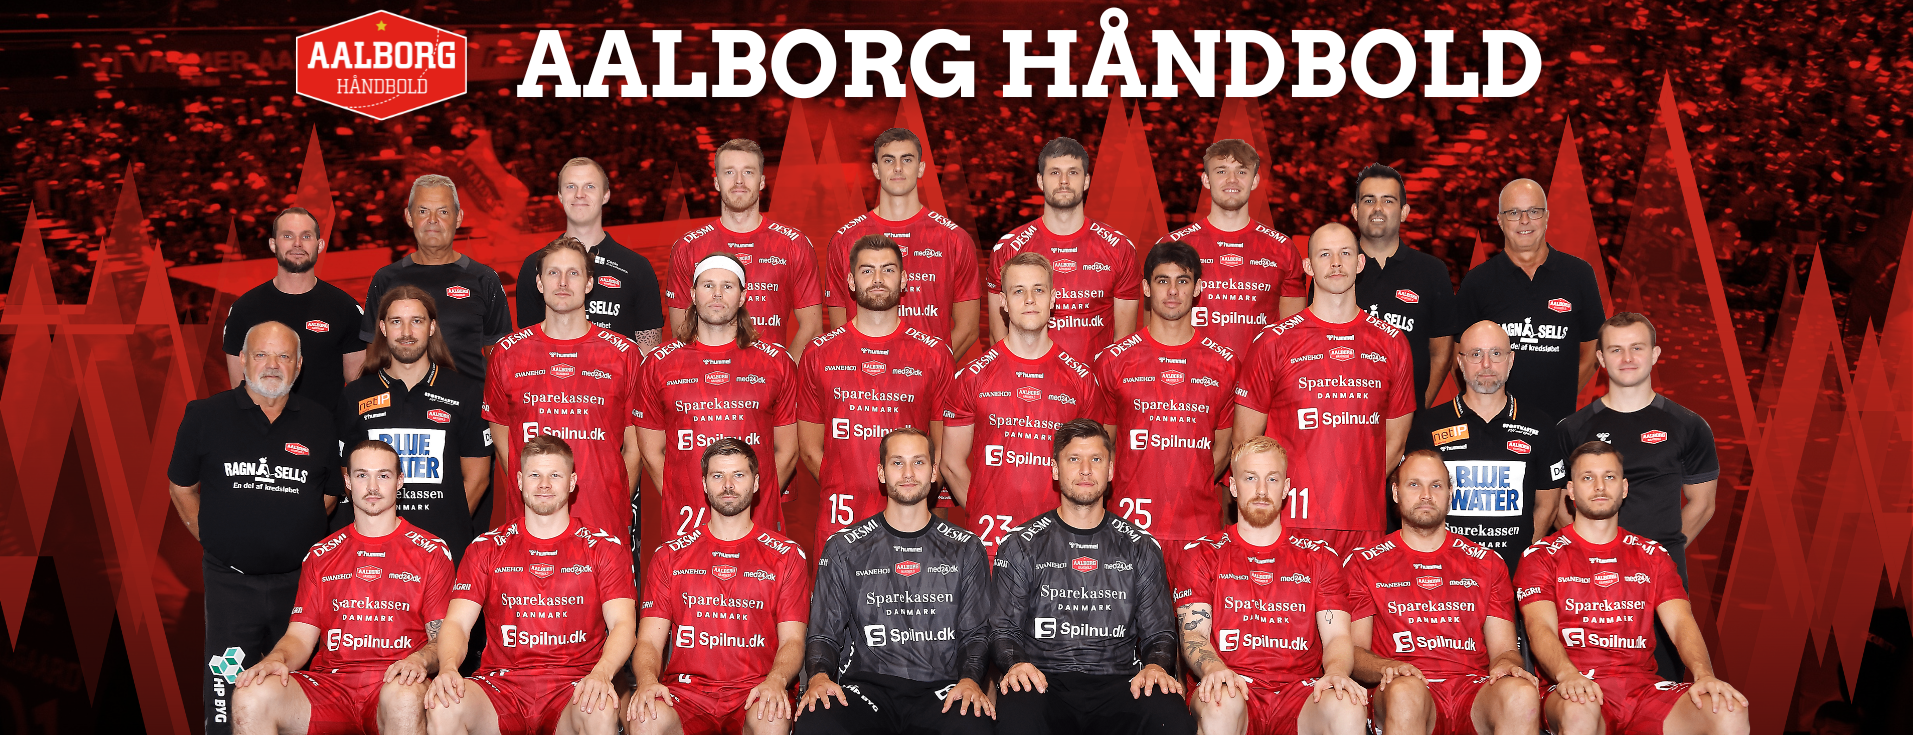 Top-Spiel am Donnerstag THW Kiel empfängt Aalborg Handbold in der Königsklasse